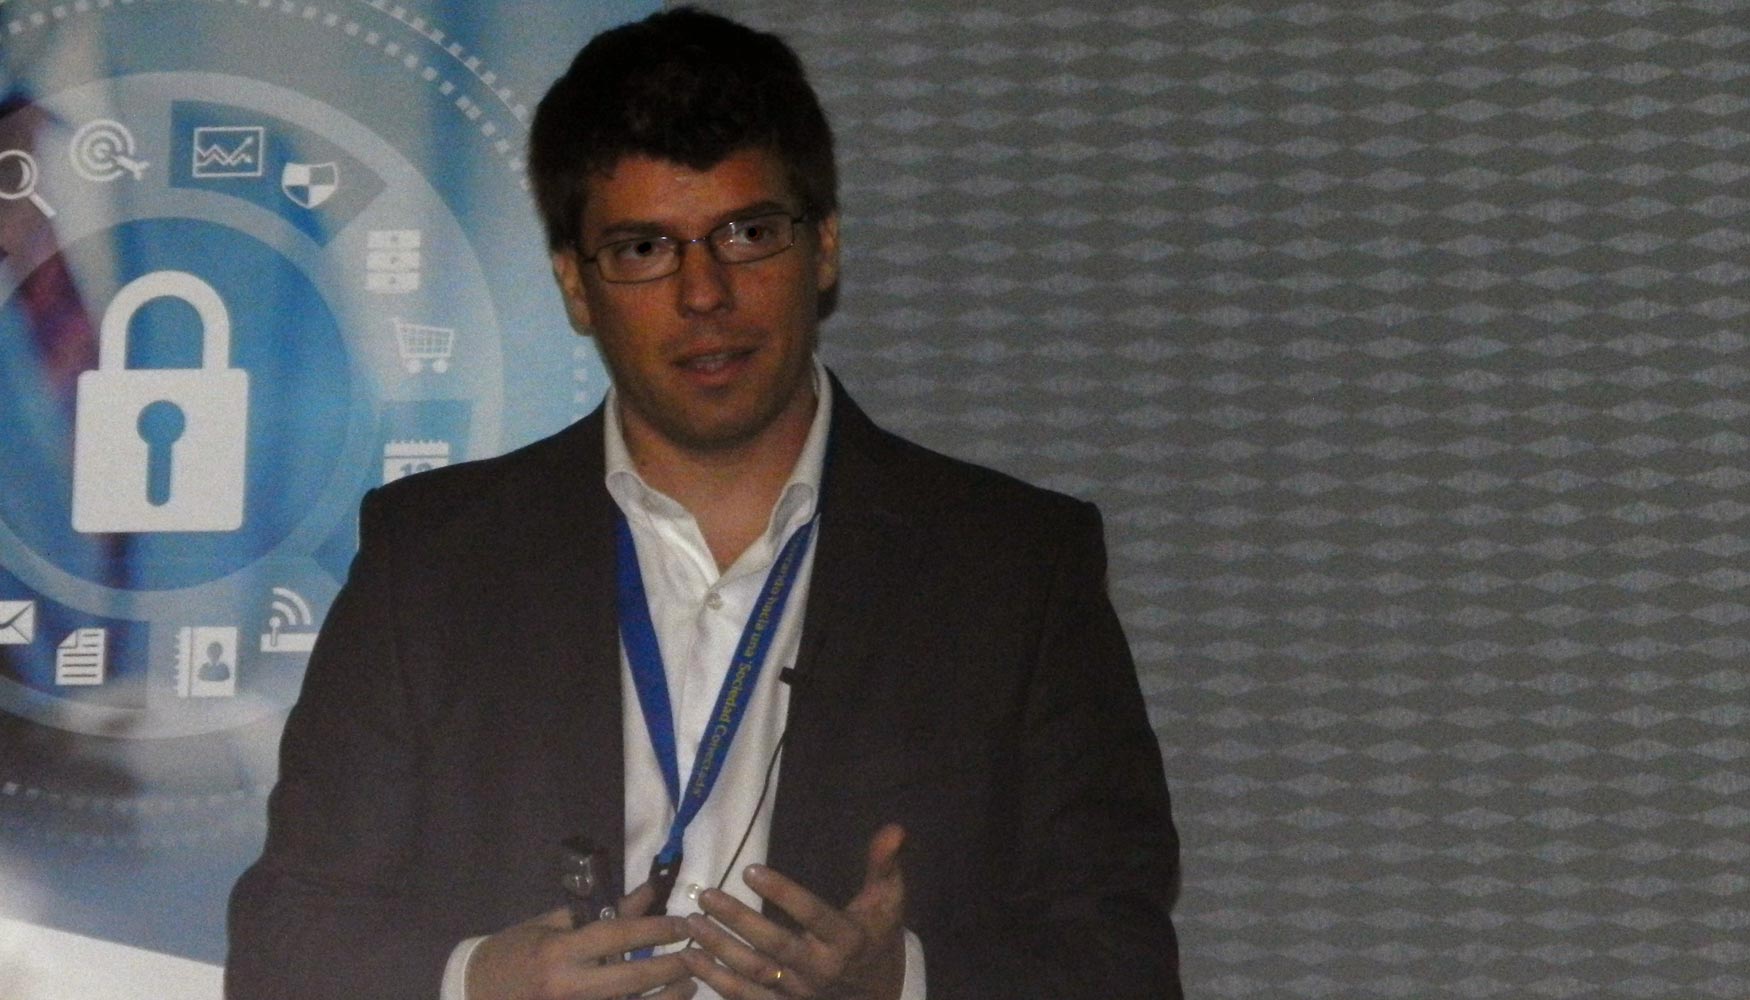 Federico de Dios, service line Manager de Akamai Technologies